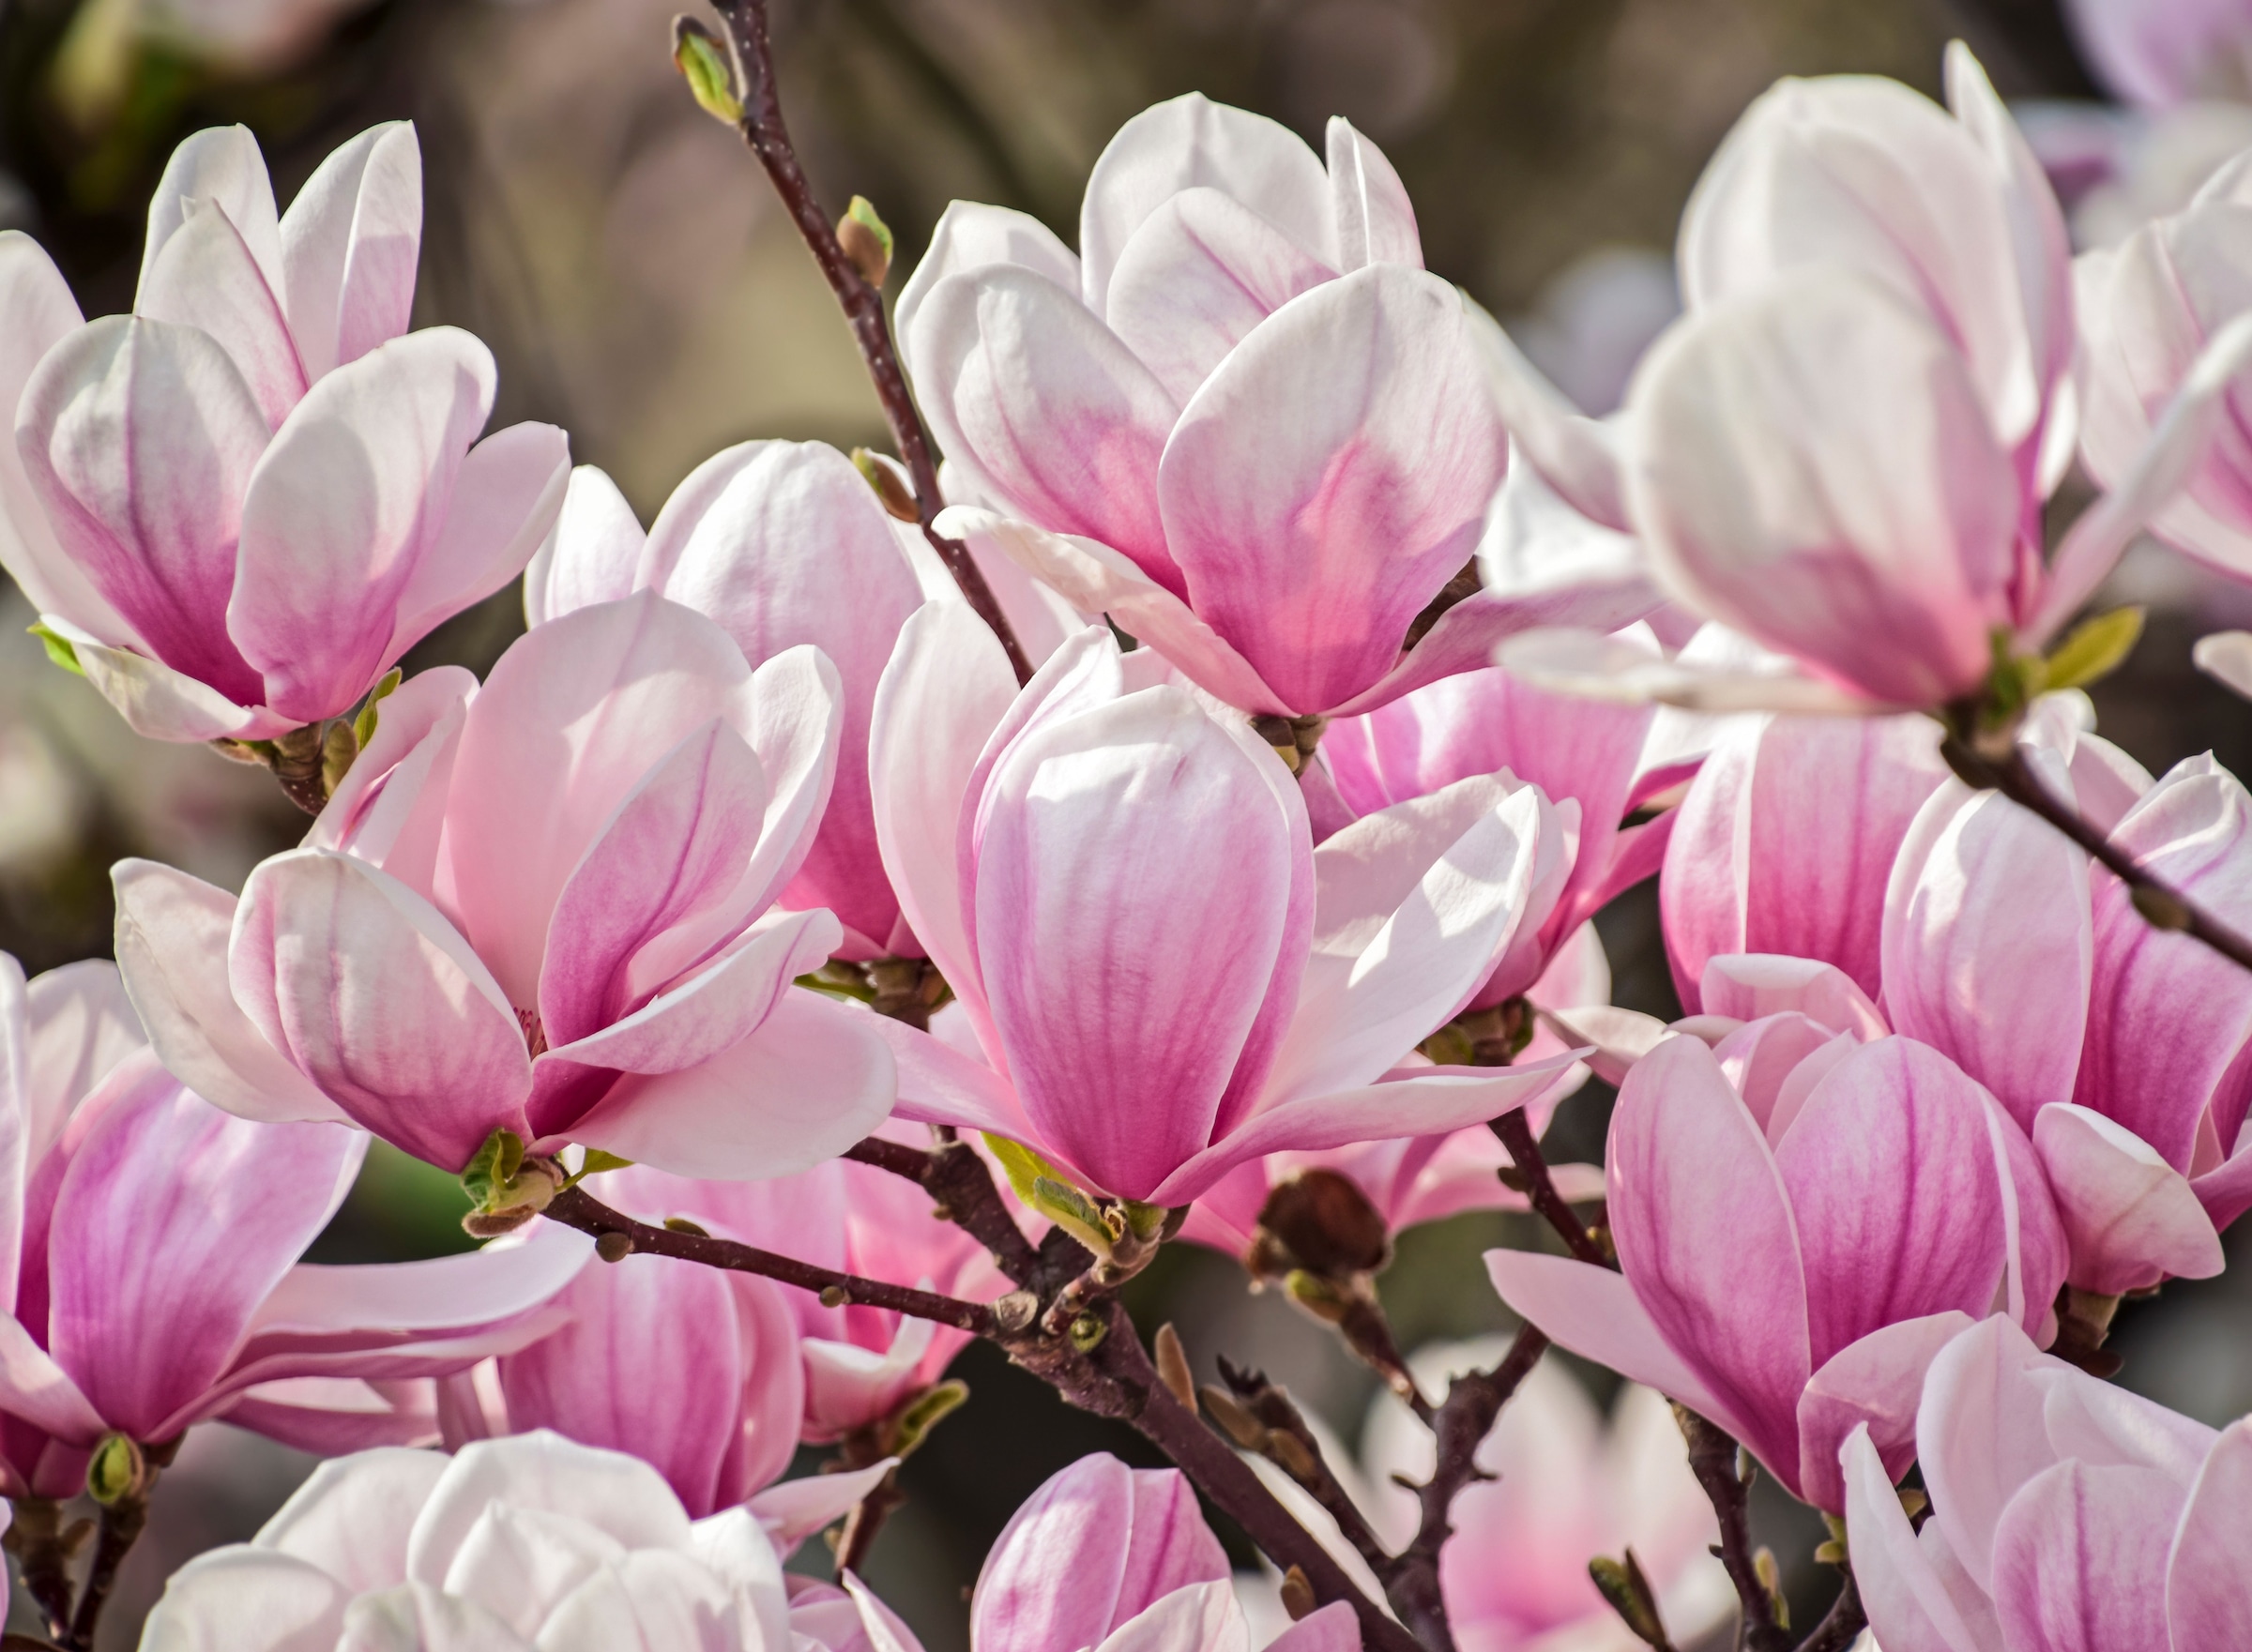 Papermoon Fototapete »Magnolia Flowers«